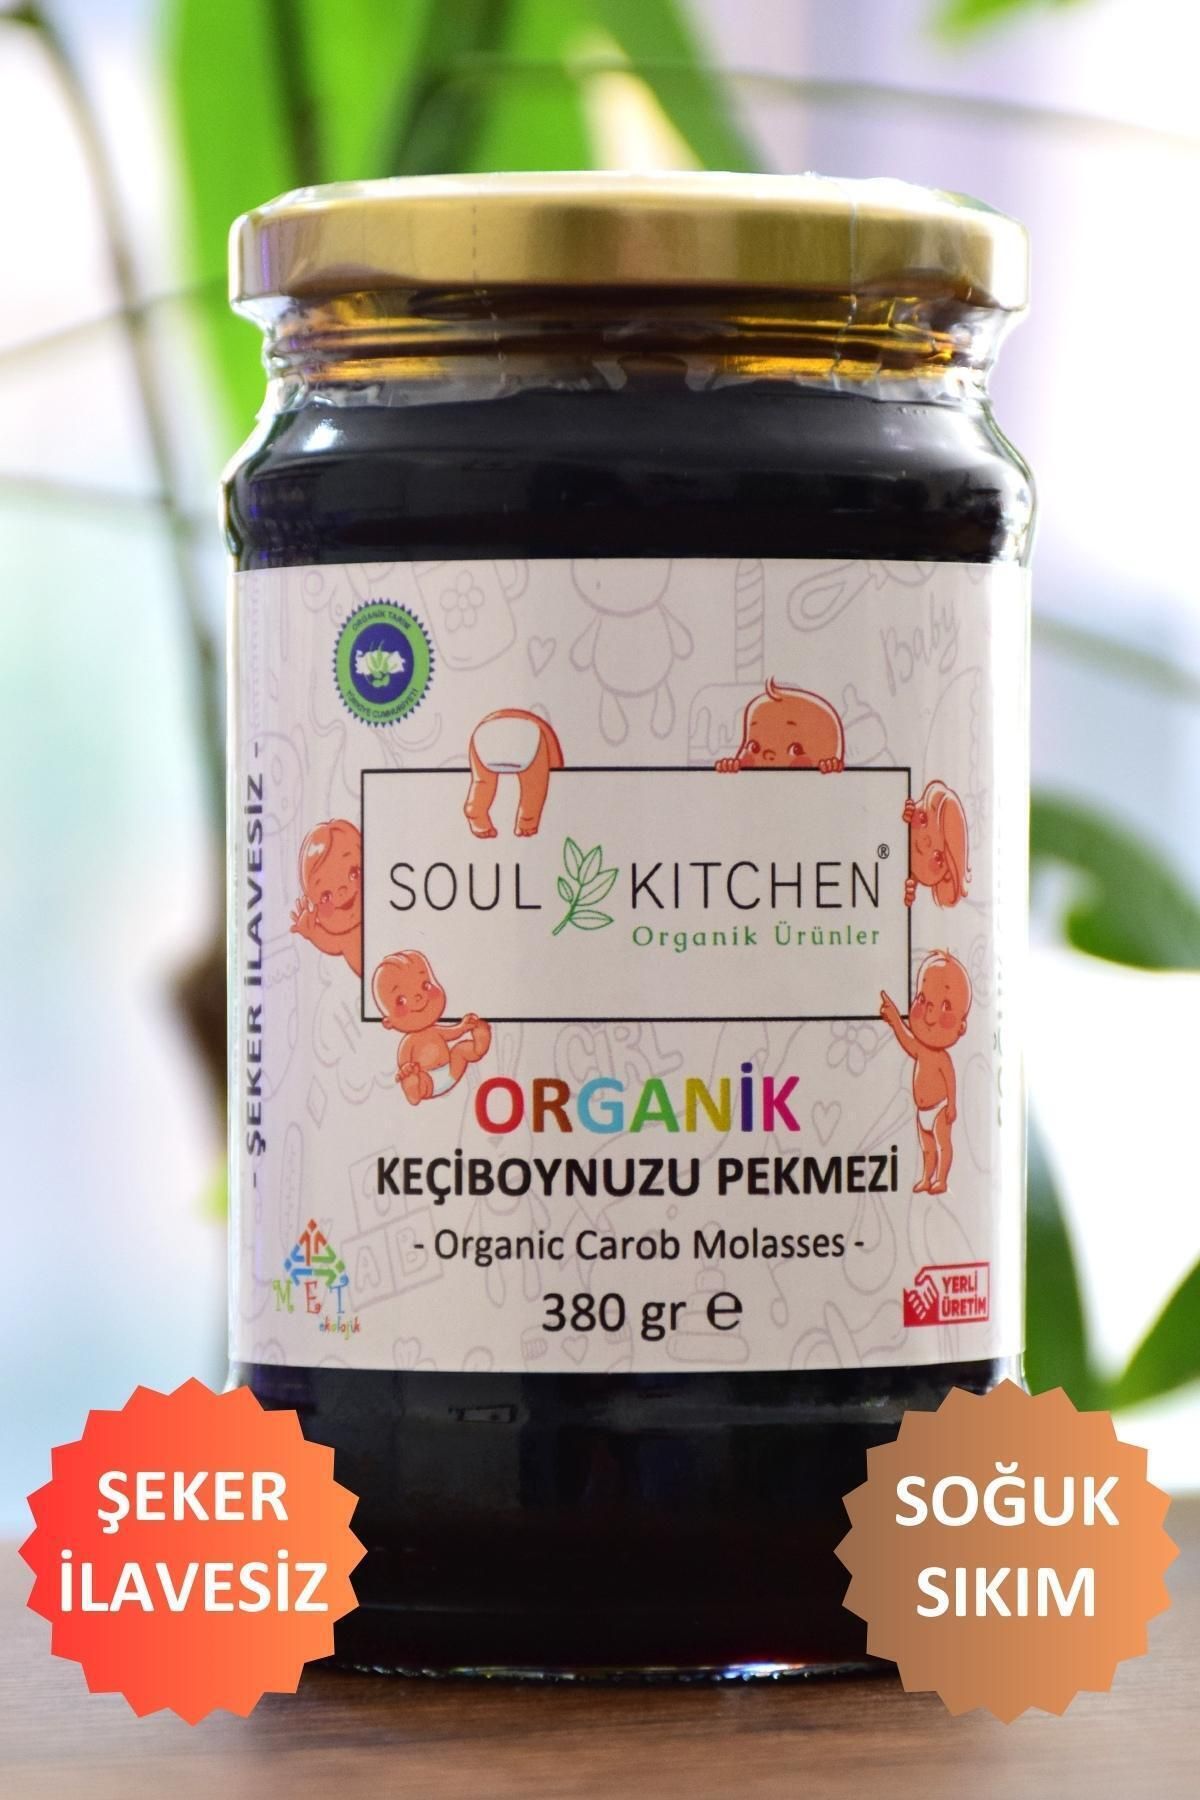 Soul Kitchen Organik Ürünler Organik Bebek Keçiboynuzu Pekmezi 380gr (SOĞUK SIKIM) (ŞEKER İLAVESİZ)